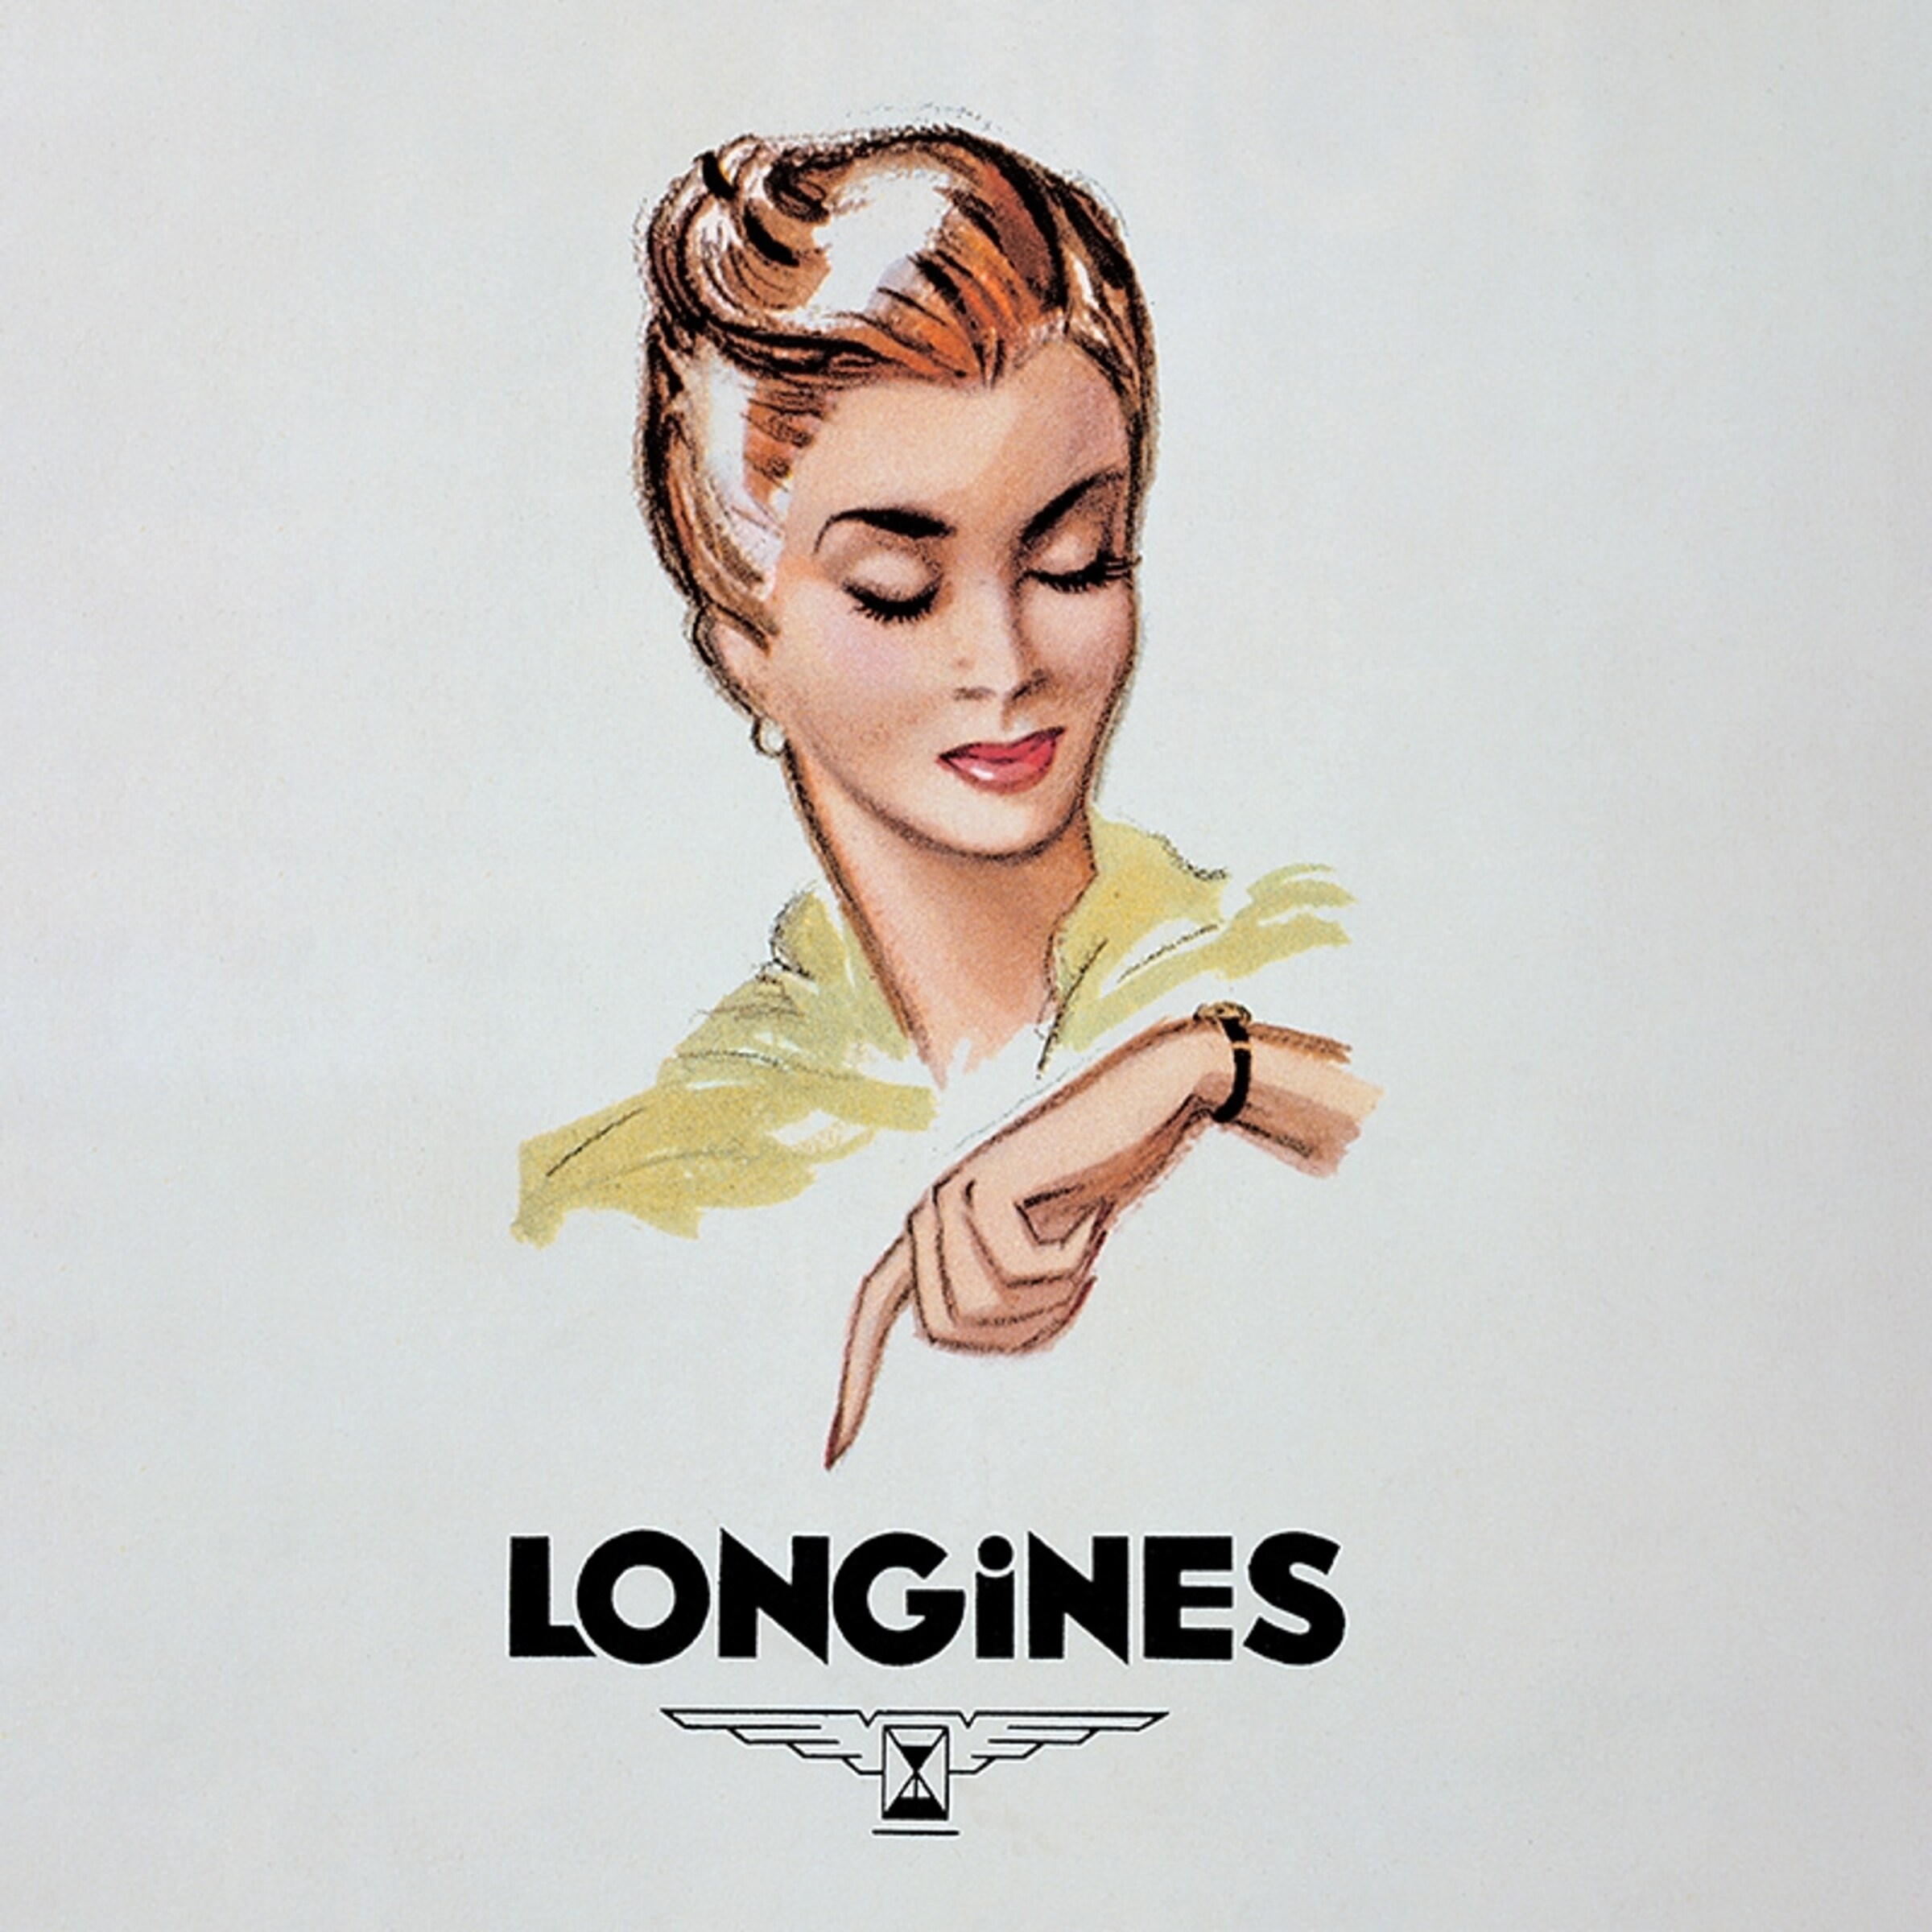 Longines_London_boutique_image